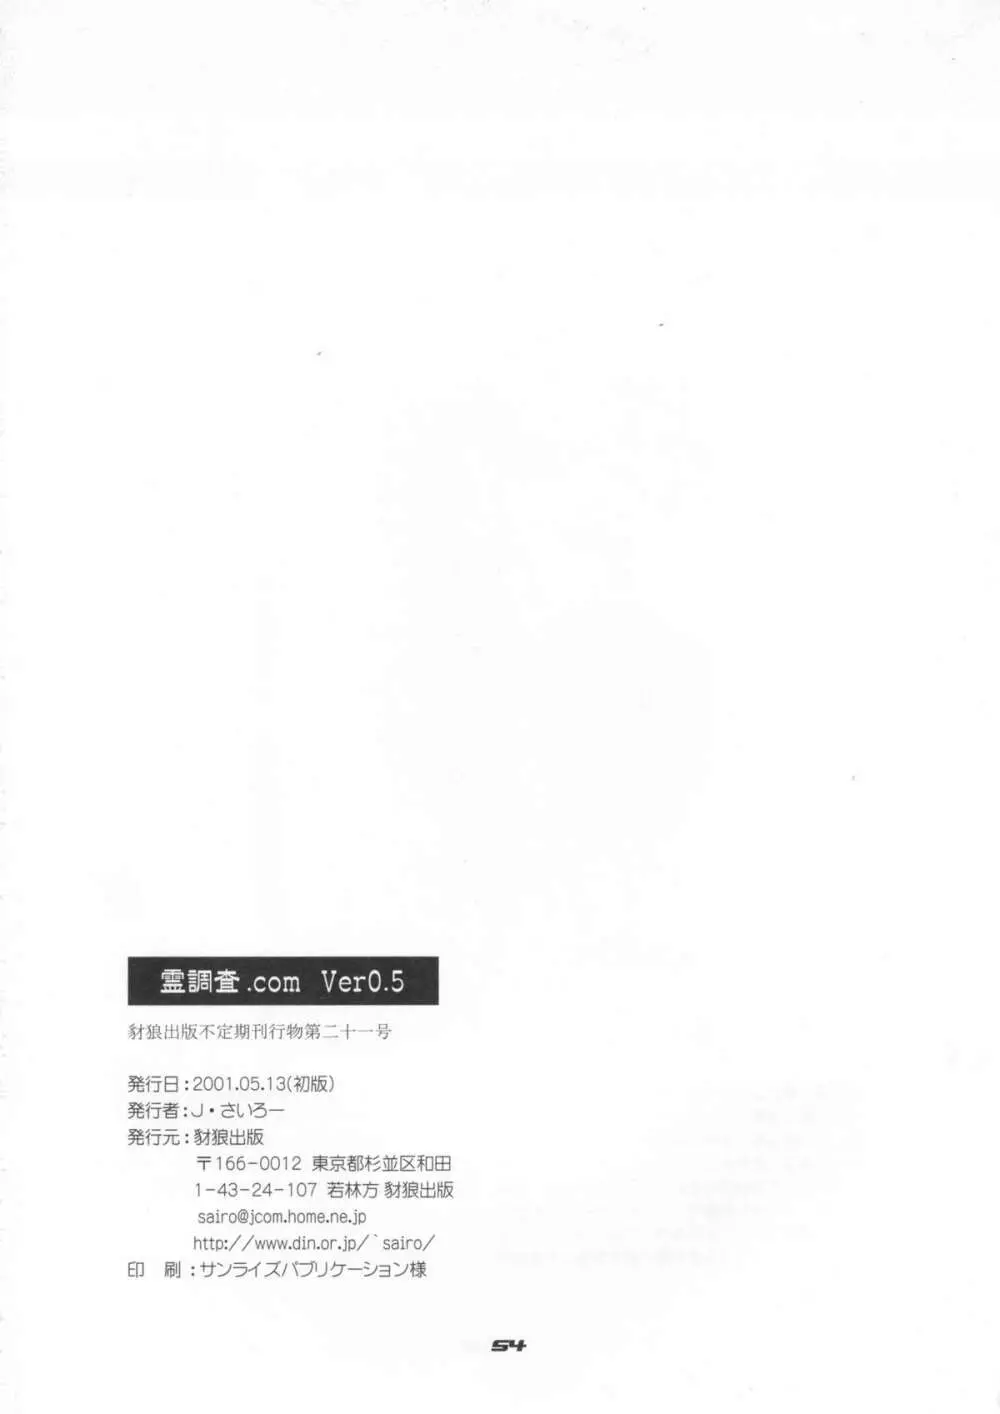 レイチョウサコム - 霊調査.com Ver0.5 - page53